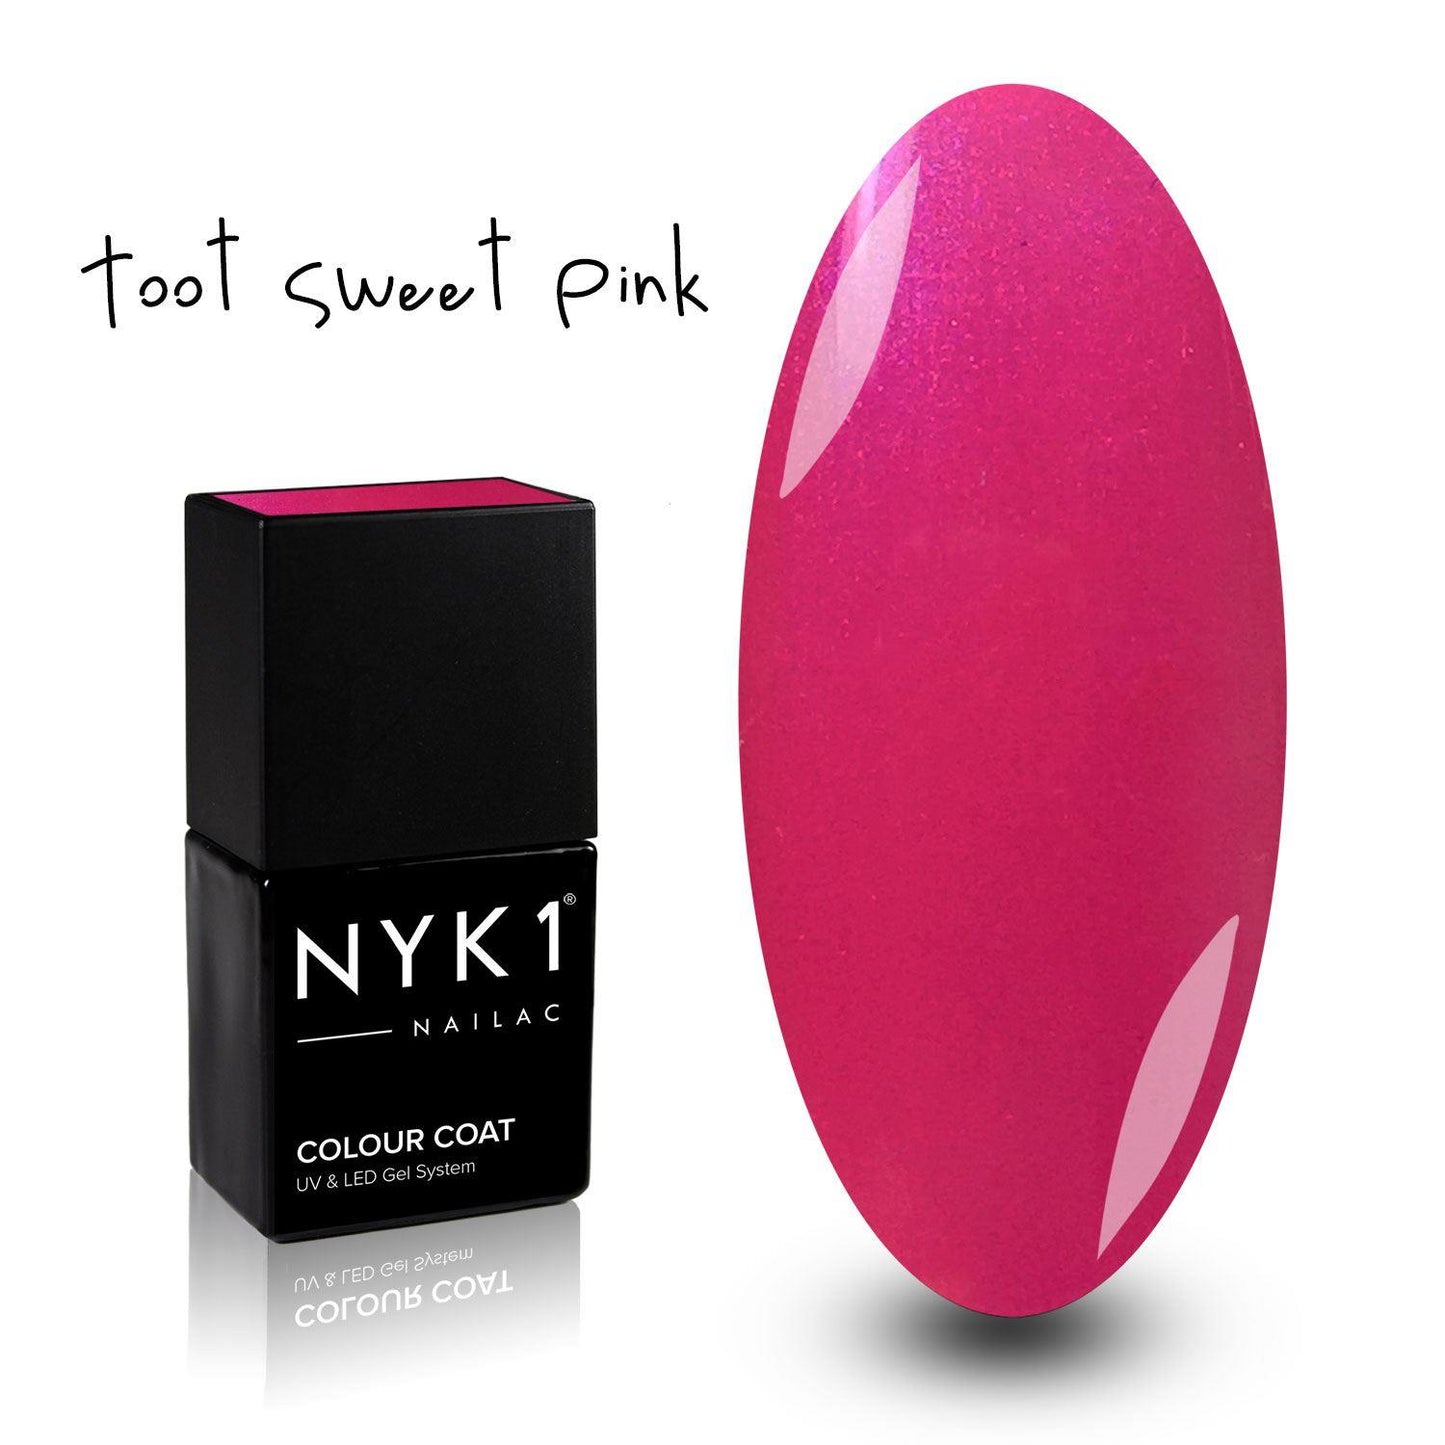 NYK1 Toot Sweet Pink Gel Nail Polish